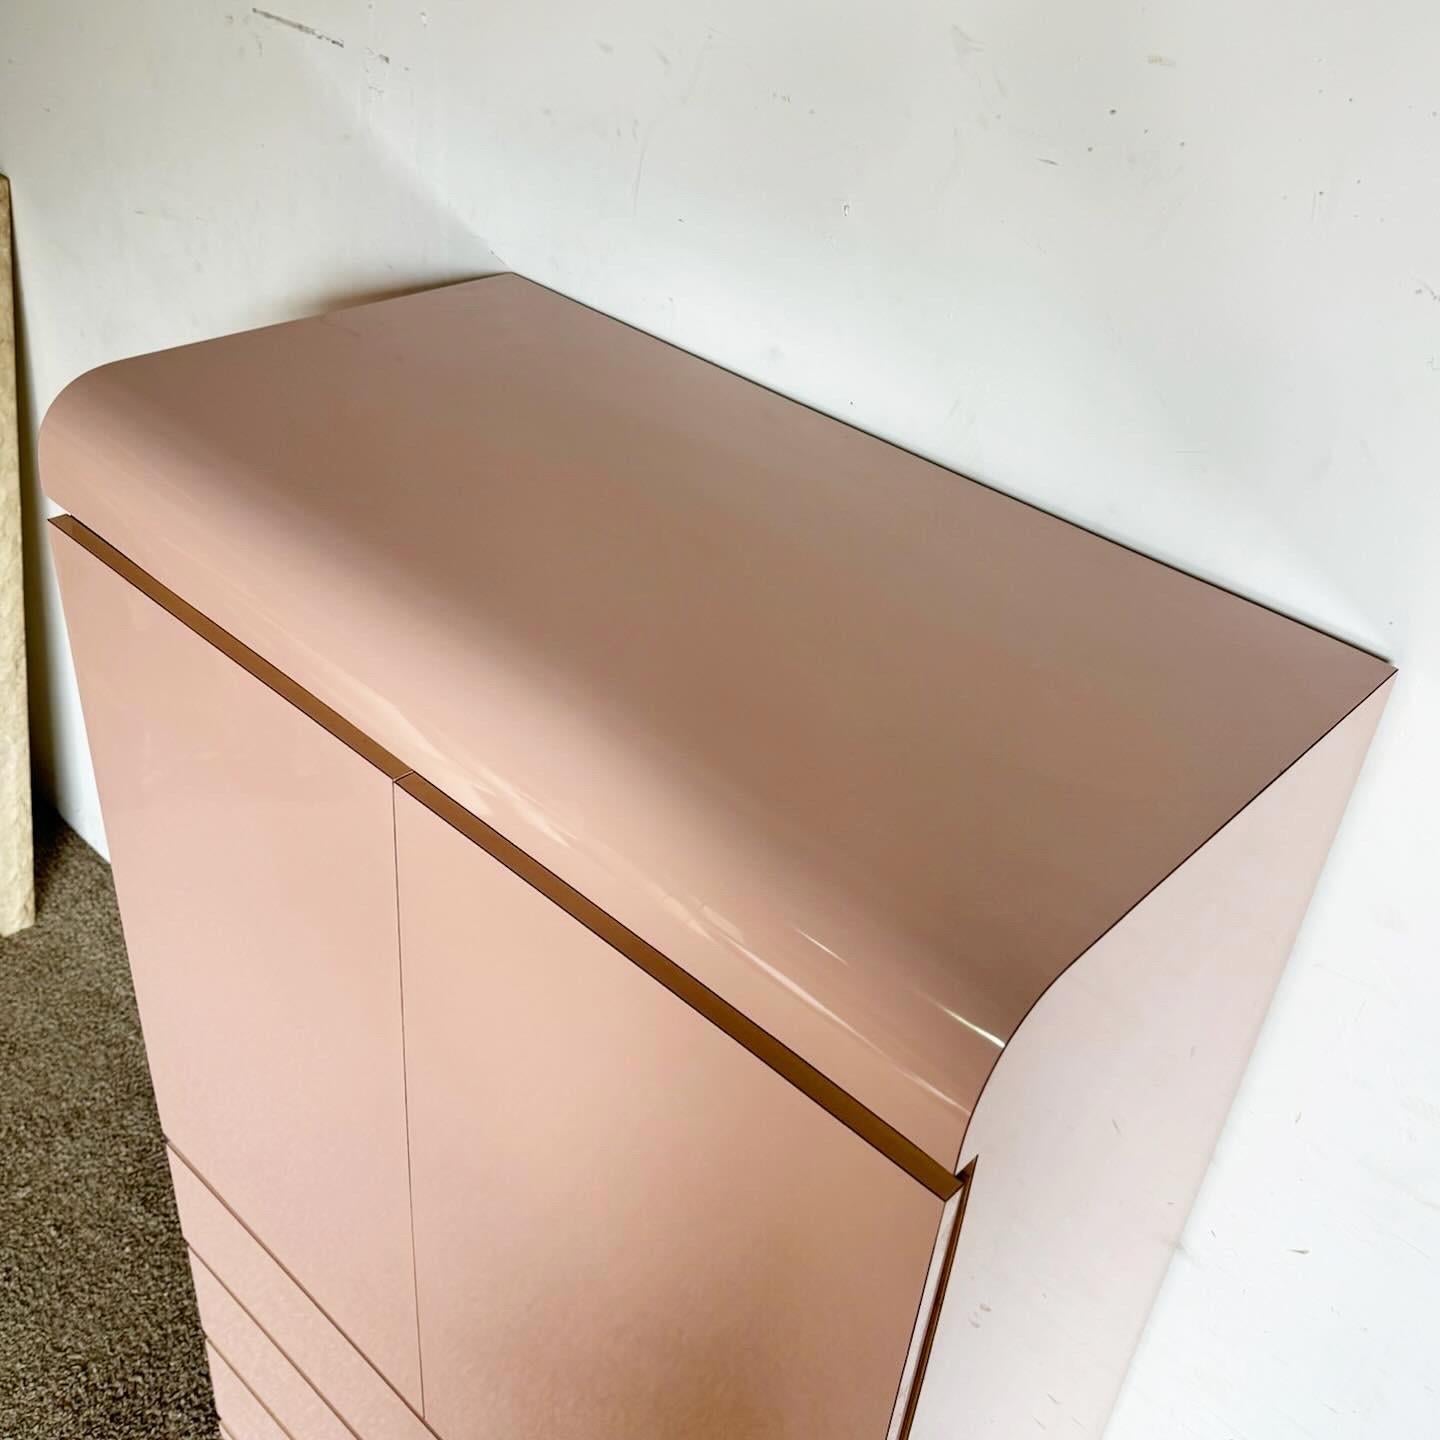 Der pinkfarbene Lacklaminat-Wasserfallschrank mit goldenen Akzenten steht für einen kühnen, postmodernen Stil. Dieses auffällige Möbelstück bietet reichlich Stauraum und ein elegantes Design, das perfekt ist, um Ihrem Raum einen Hauch von Farbe und